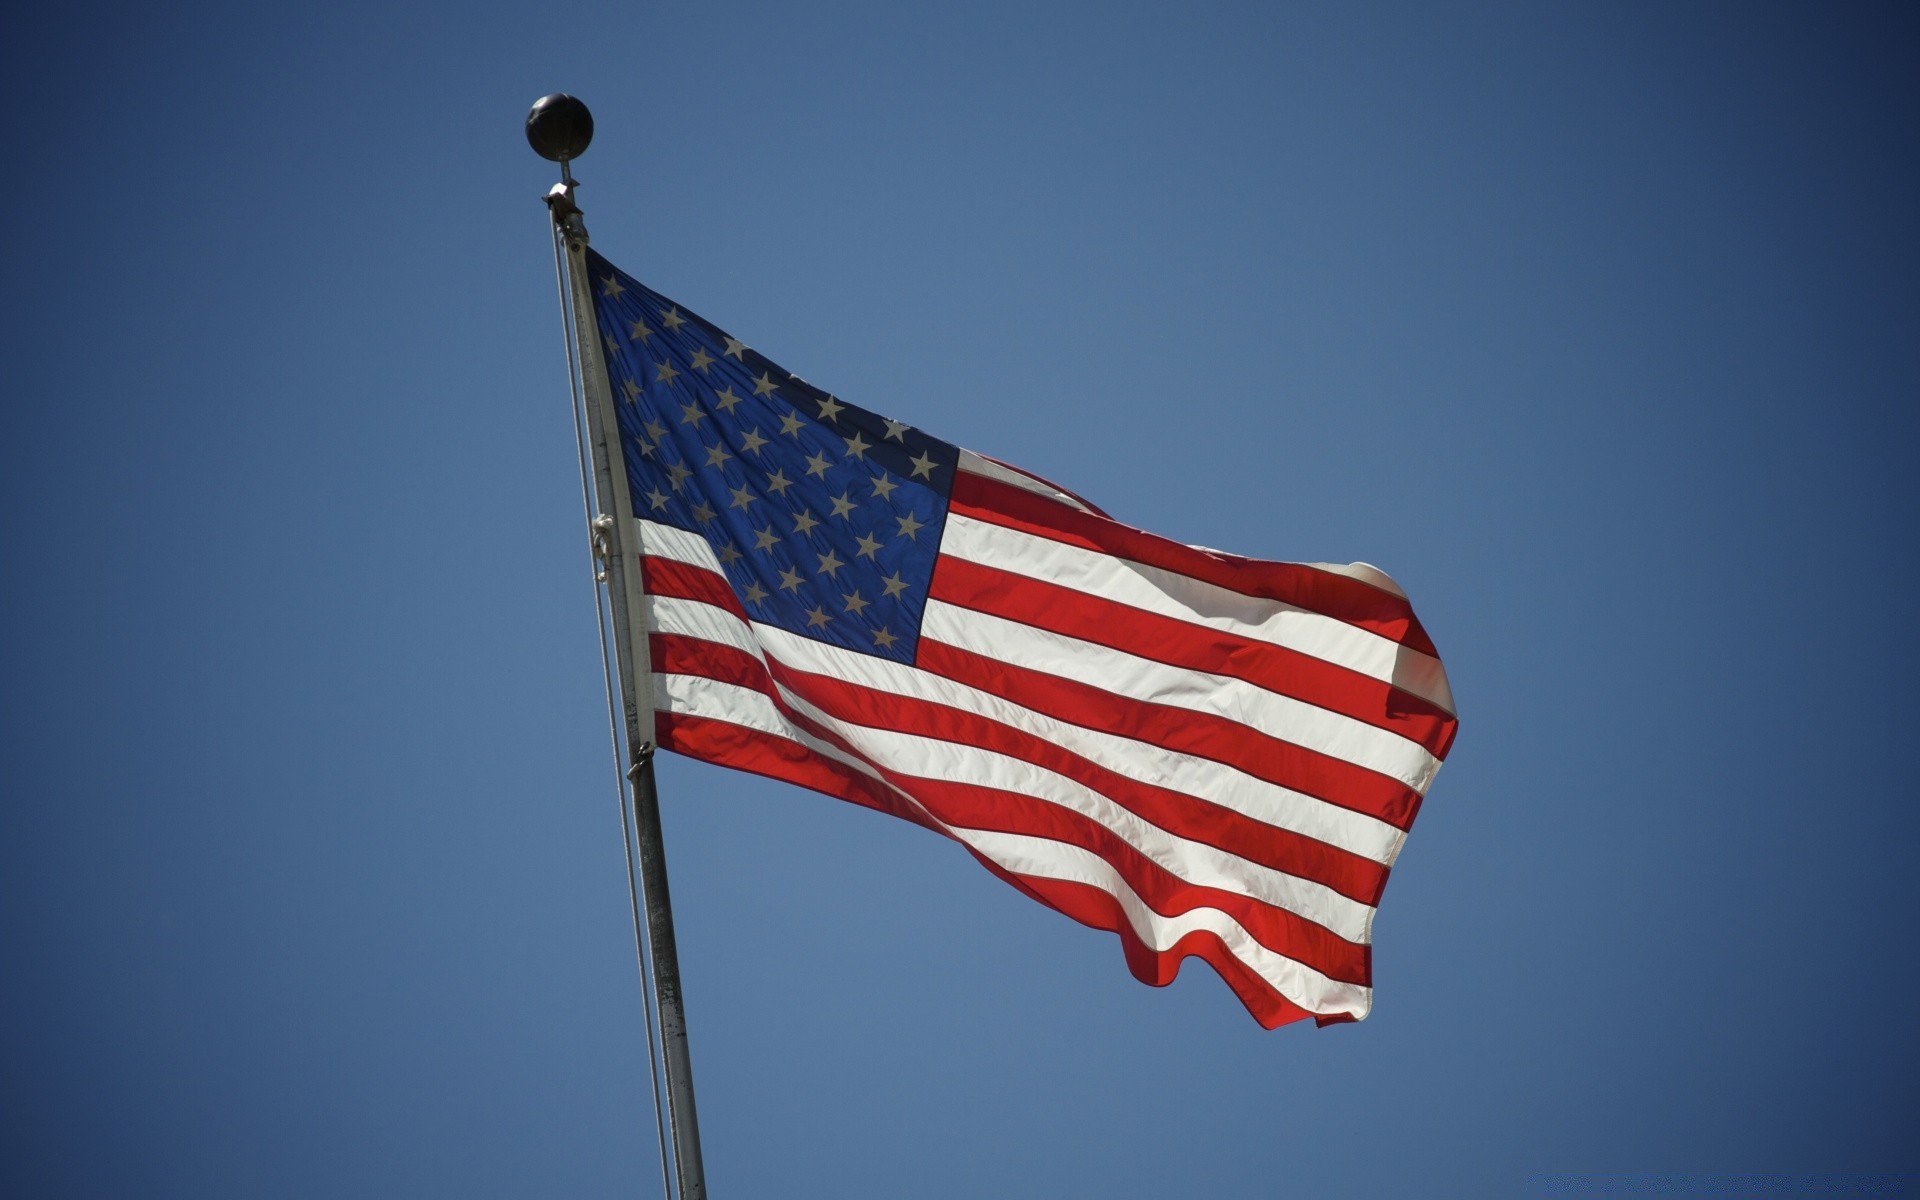 америка флаг патриотизм флагшток ветер гордость администрация полюс организации единство выборы демократия баннер союз страна полоса свобода личность небо